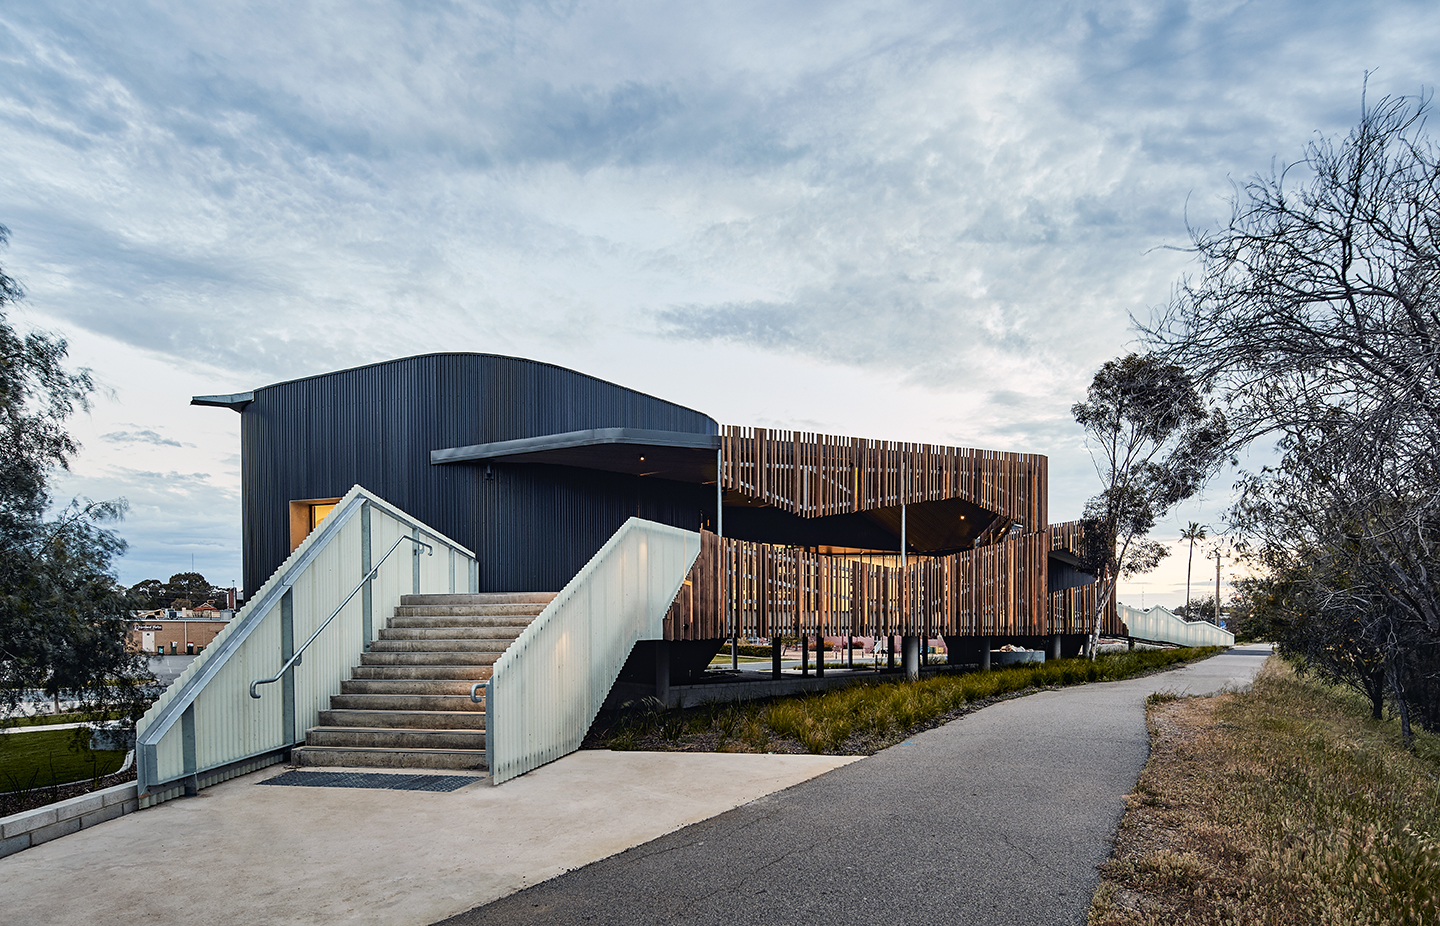 Noongar australia revista En Australia construyeron un centro cultural en memoria de sus aborígenes